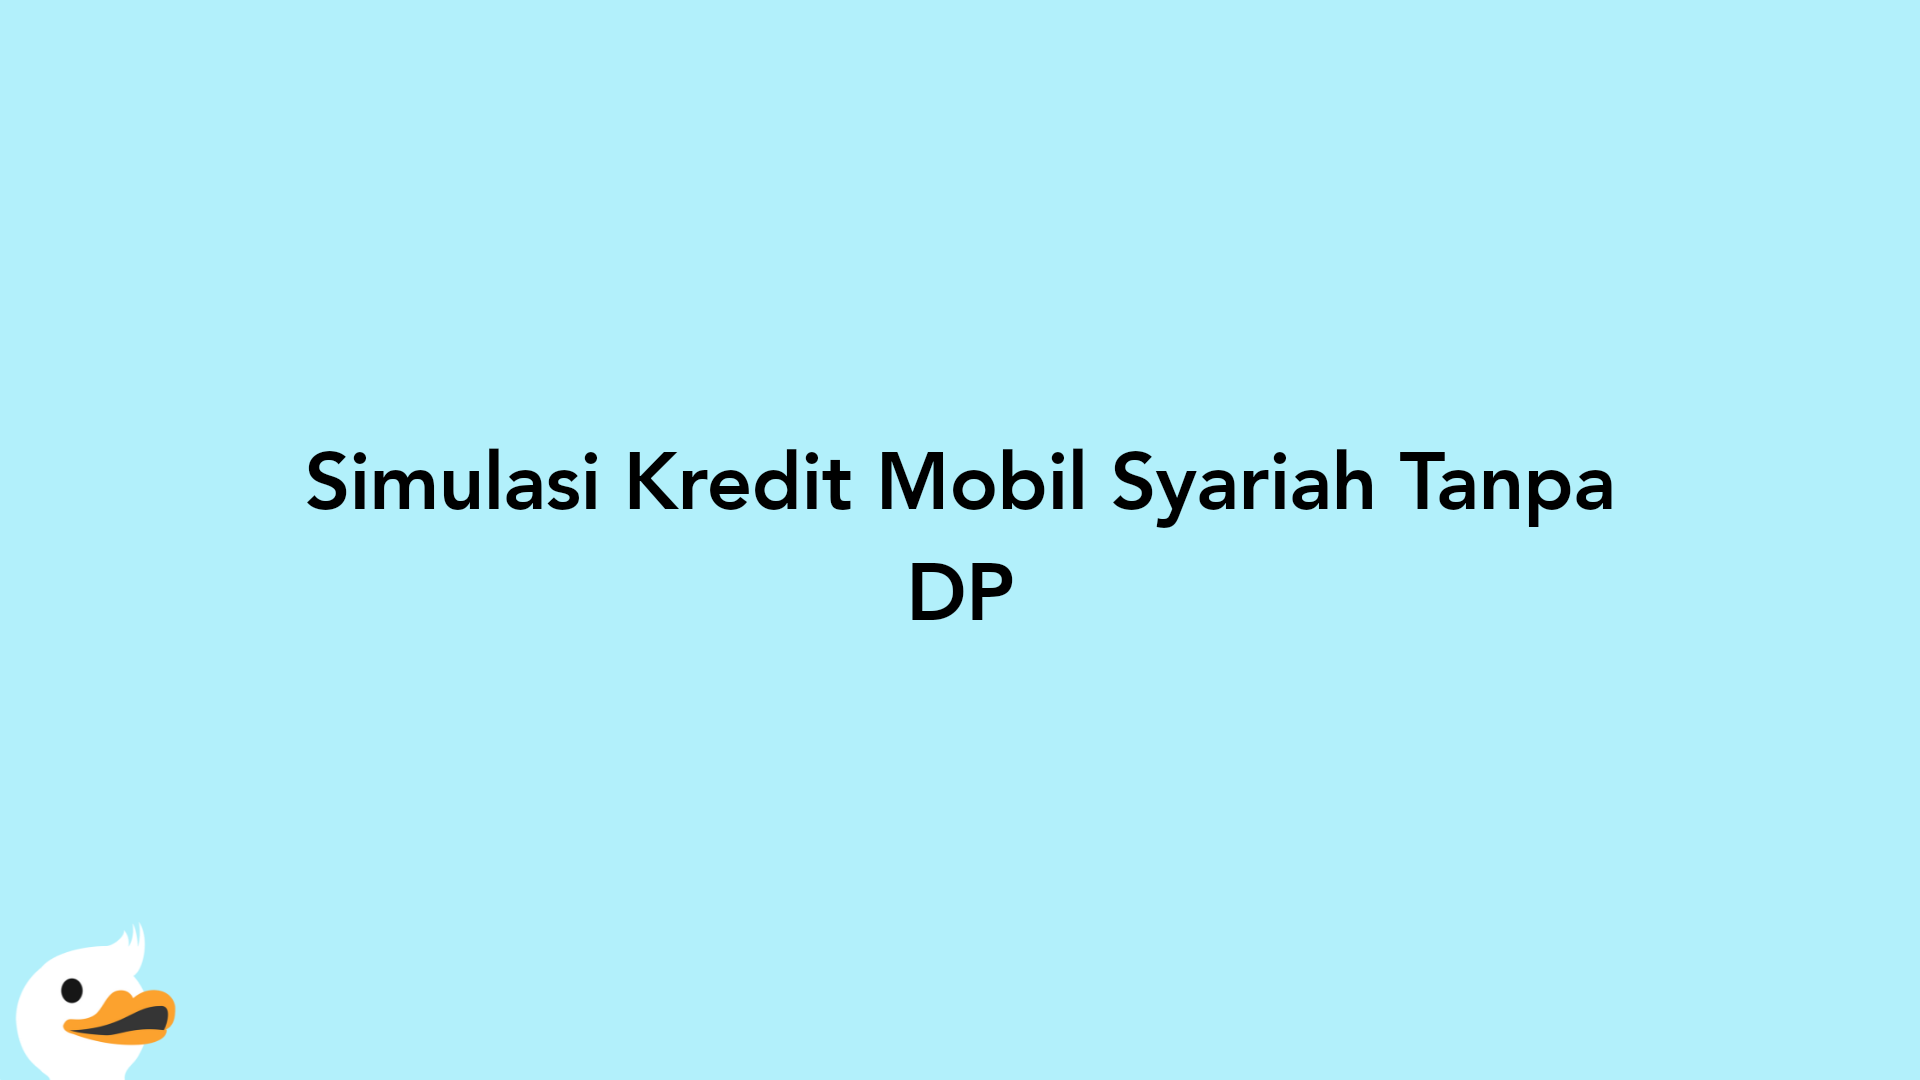 Simulasi Kredit Mobil Syariah Tanpa DP